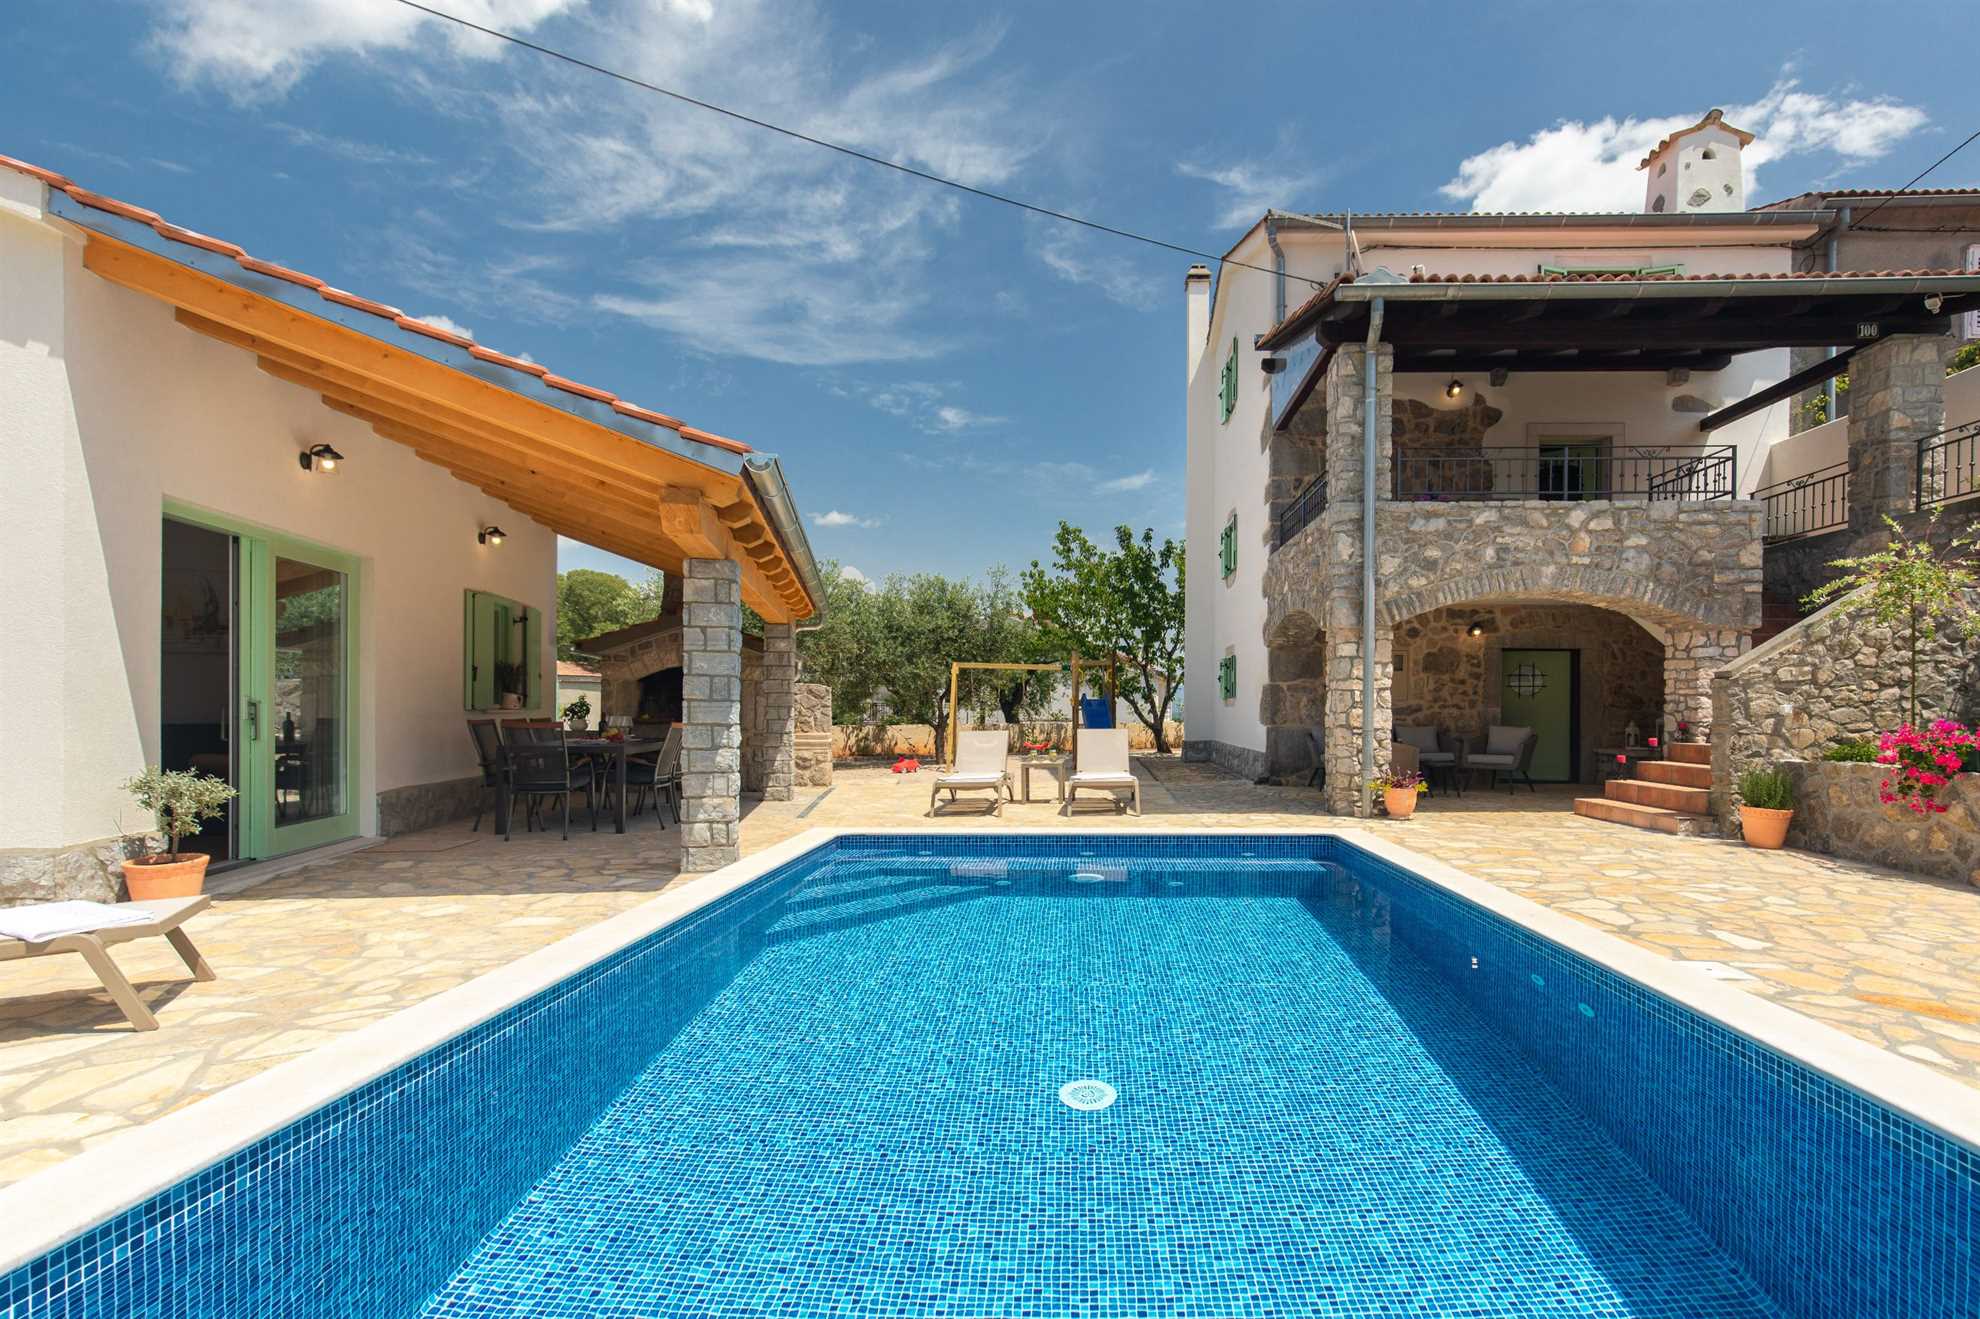 Bella casa in pietra IVA con piscina riscaldata